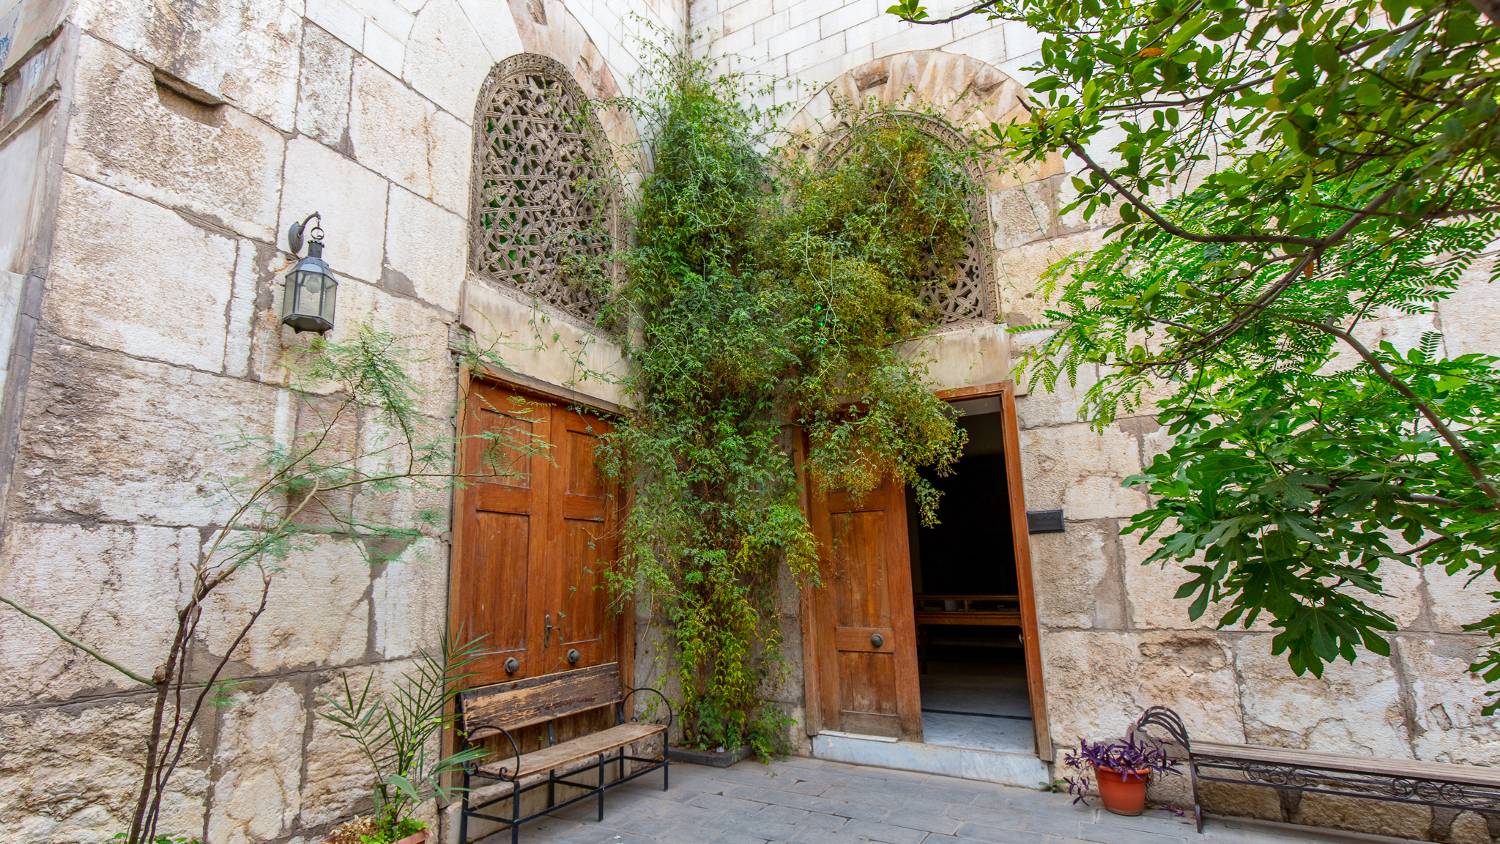 Le bimaristan Nur al-Din Zengi à Damas comprend une fontaine centrale, un jardin et des salles séparées pour le traitement de différentes maladies (Zirrar Ali)